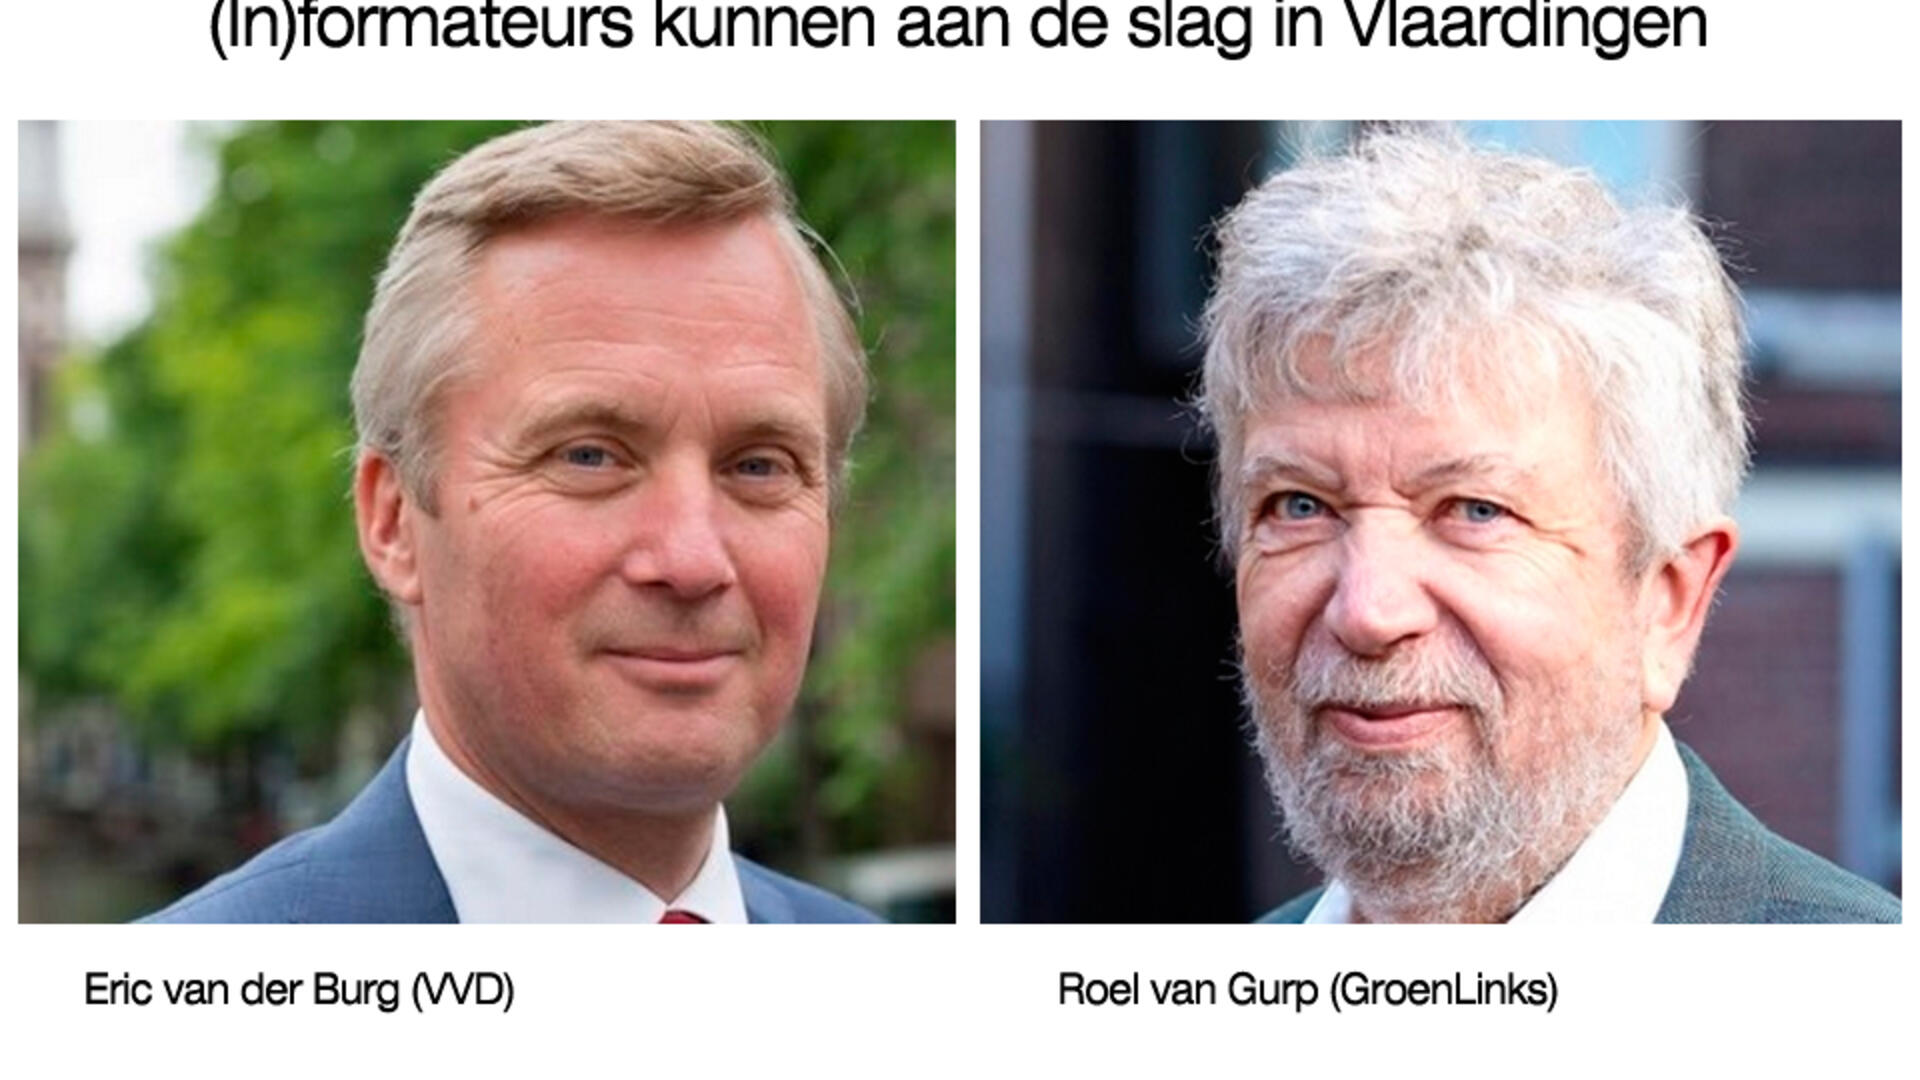 Eric van der Burg (VVD) en Roel van Gurp (GroenLinks) worden de twee informateurs die aan de slag gaan in Vlaardingen - 21 maart 2019 